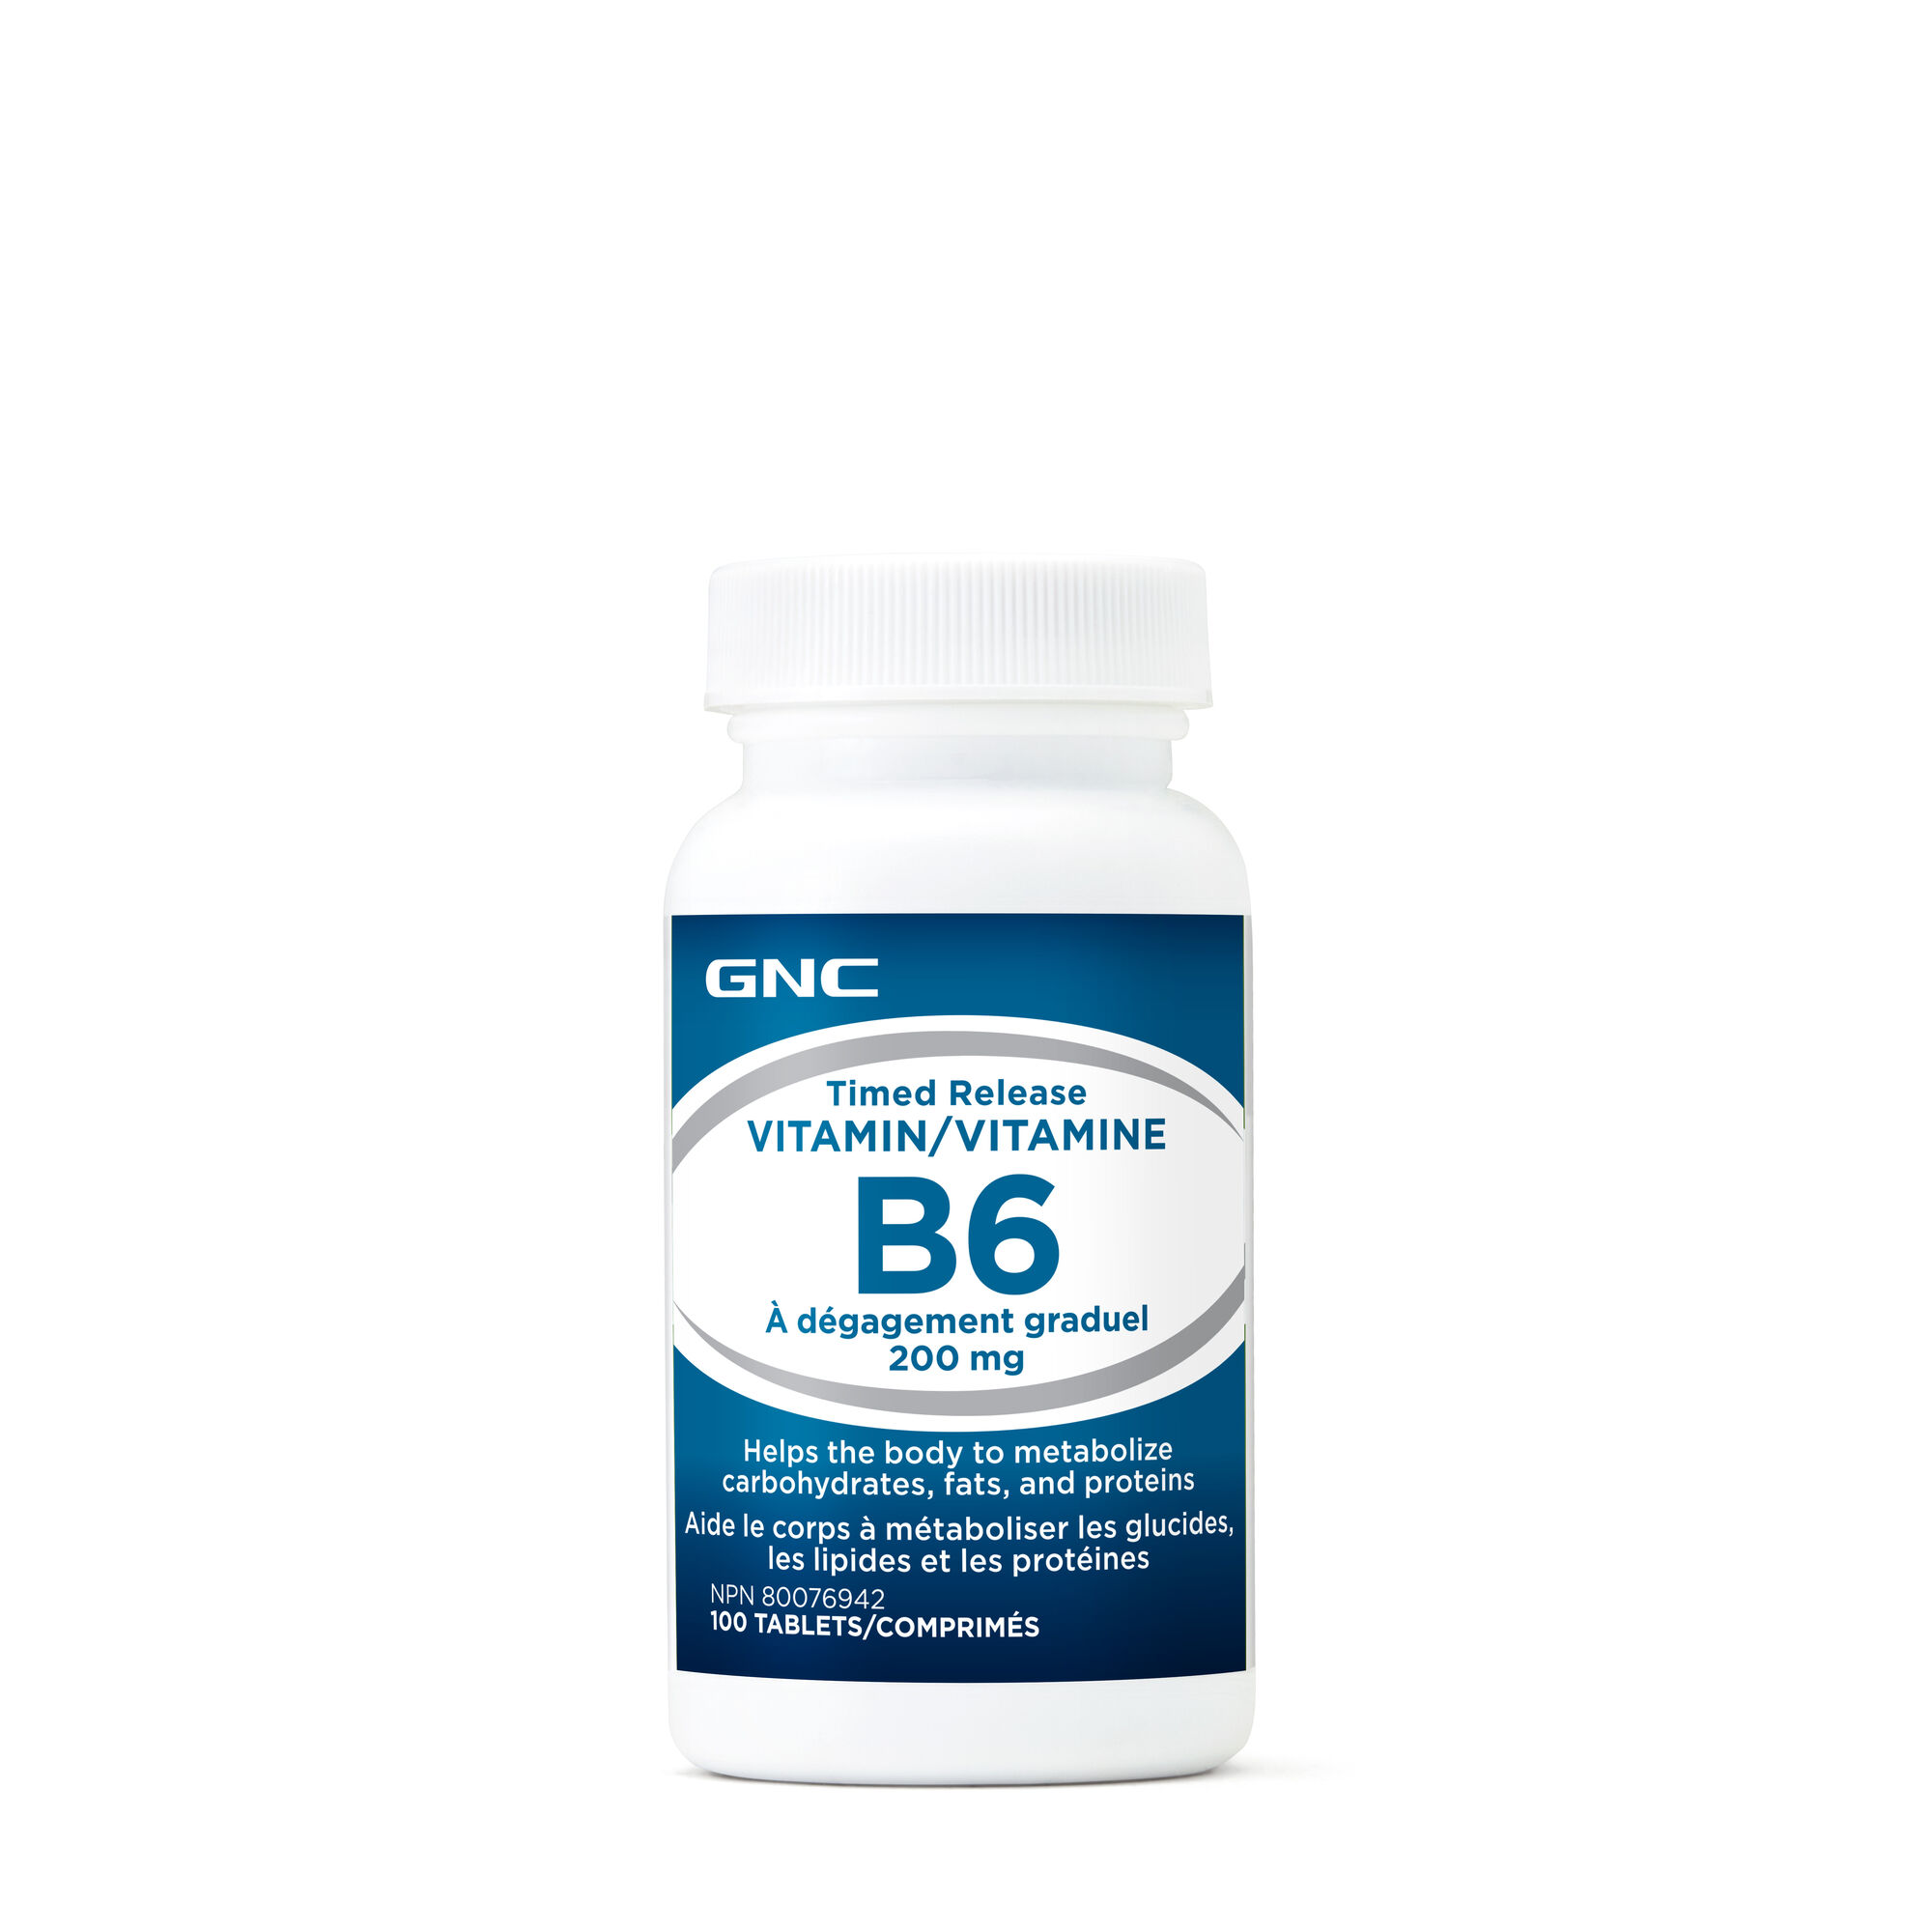 Groenteboer Opmerkelijk Verlammen GNC Timed Release Vitamin B6 200mg | GNC